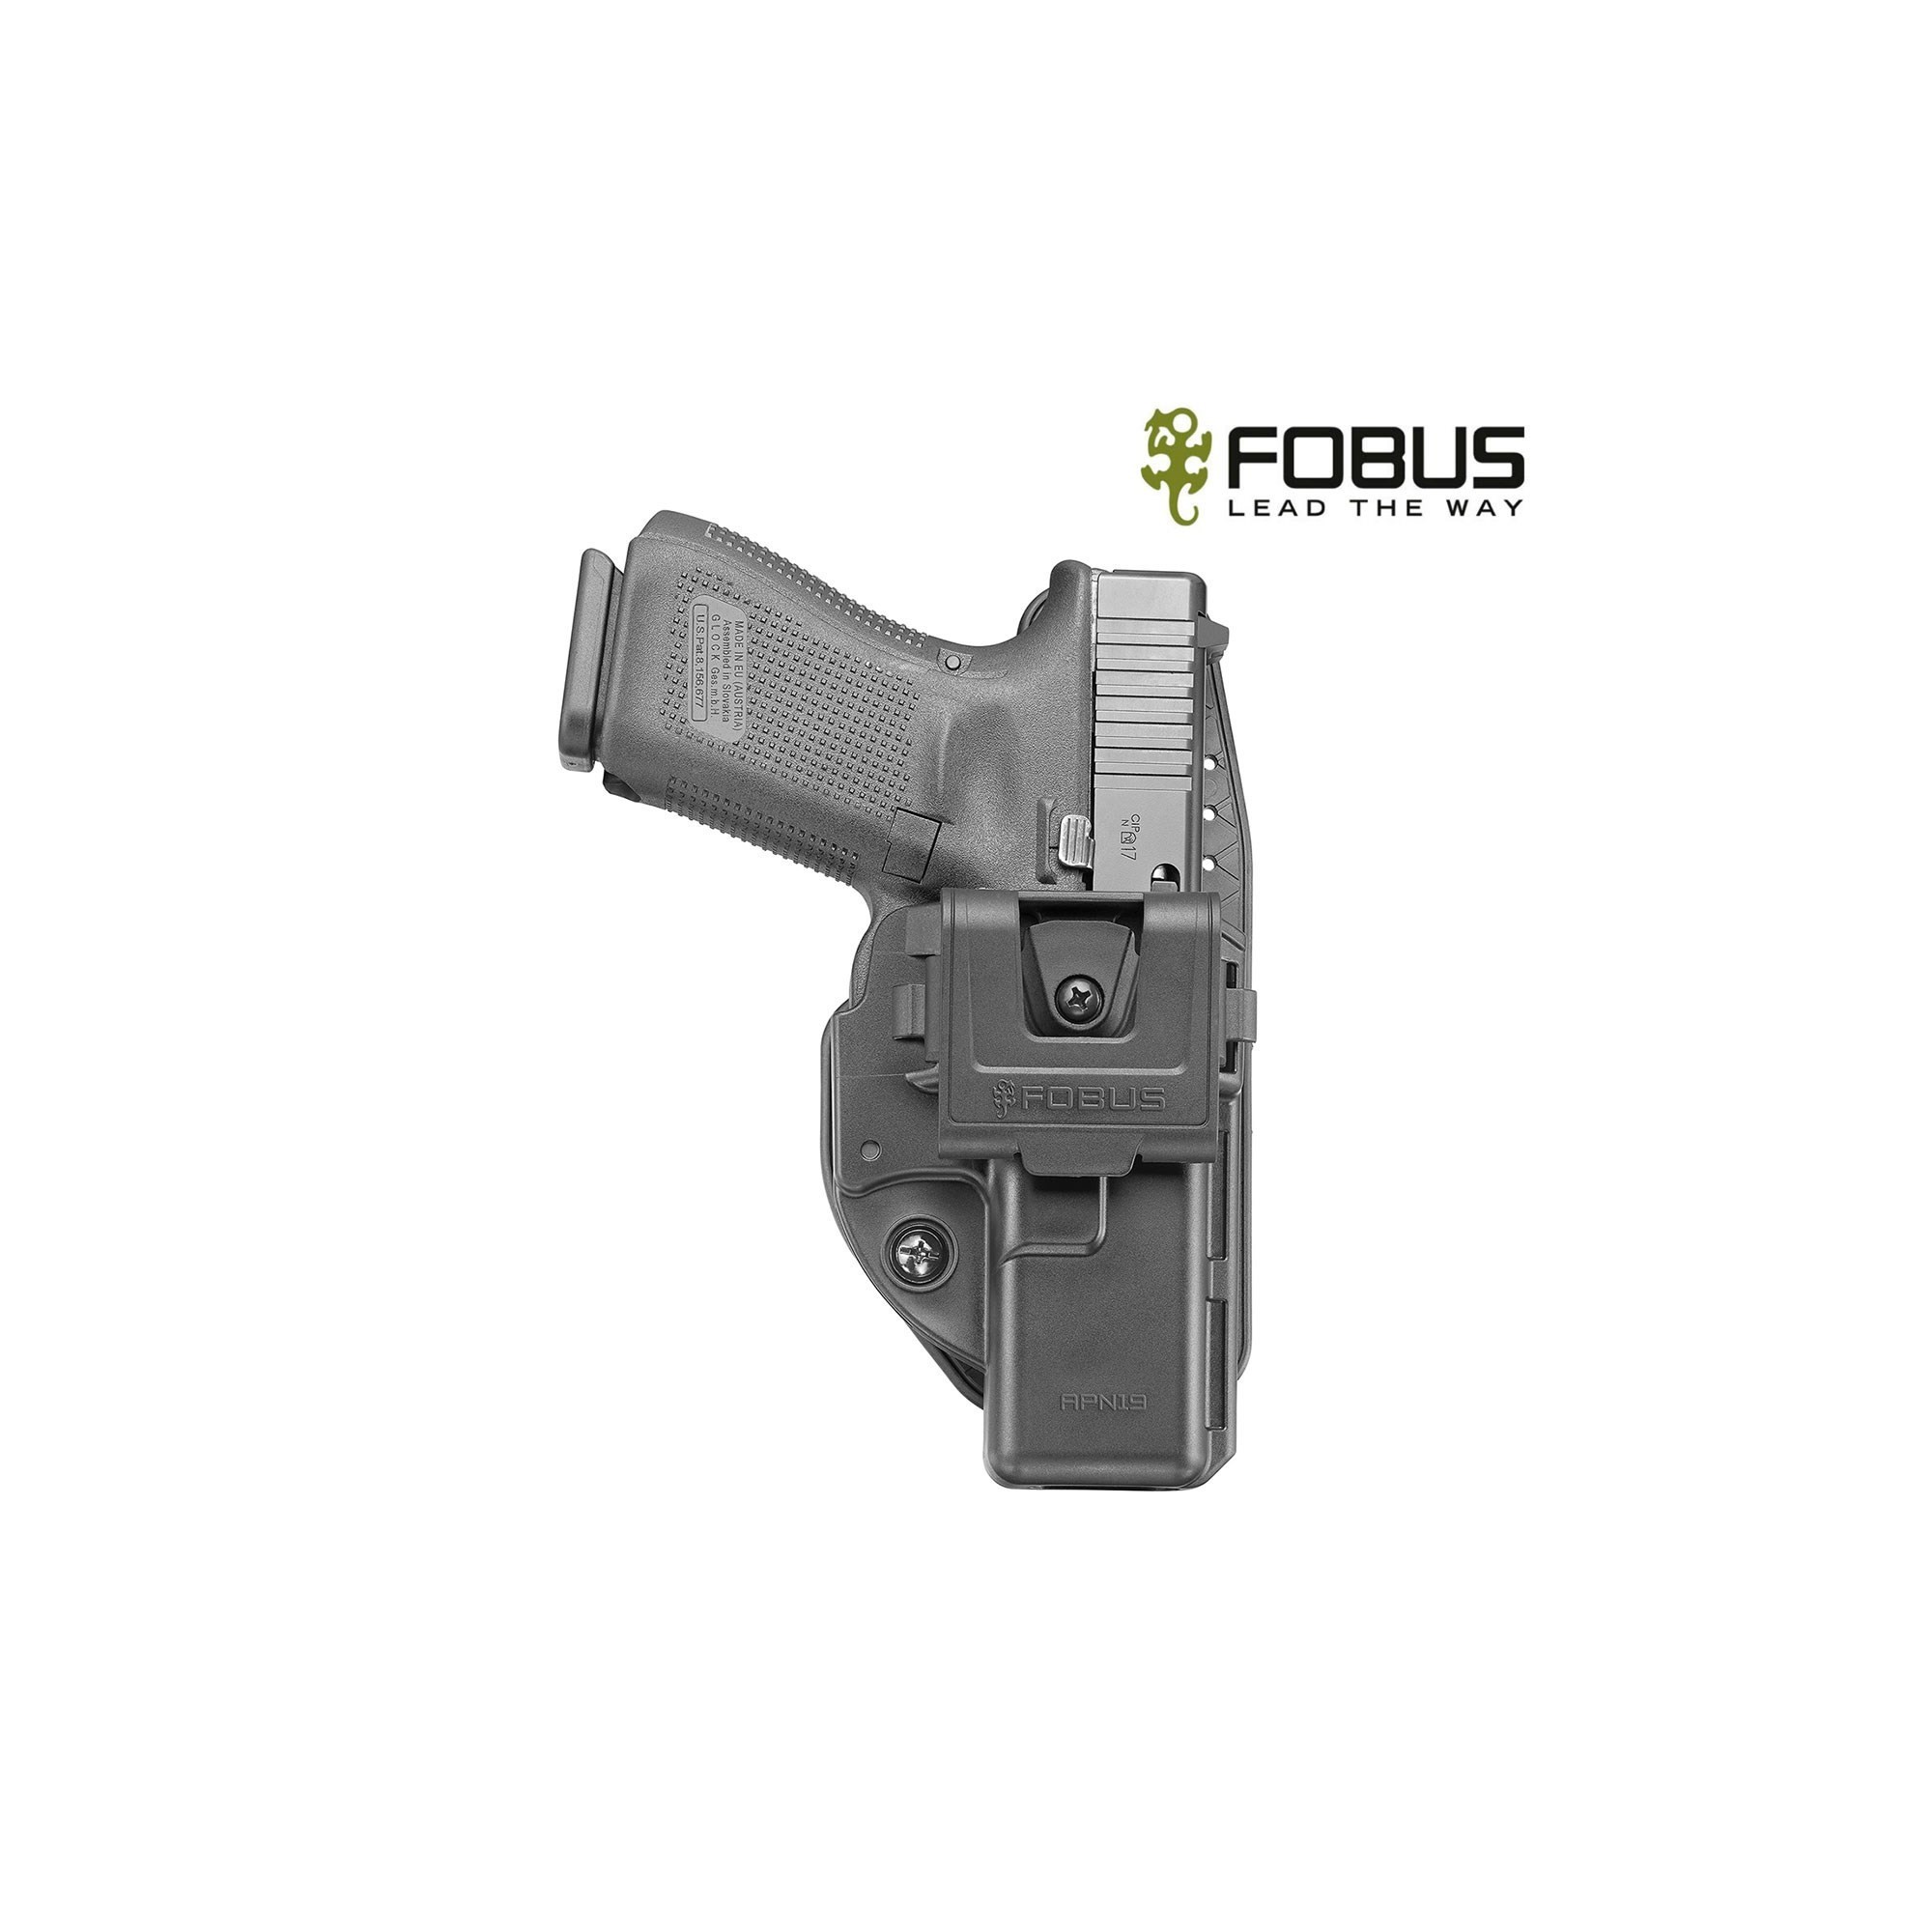 Holster tactique pour Glock 17 S&W M&P 9mm FOBUS spécial arme avec